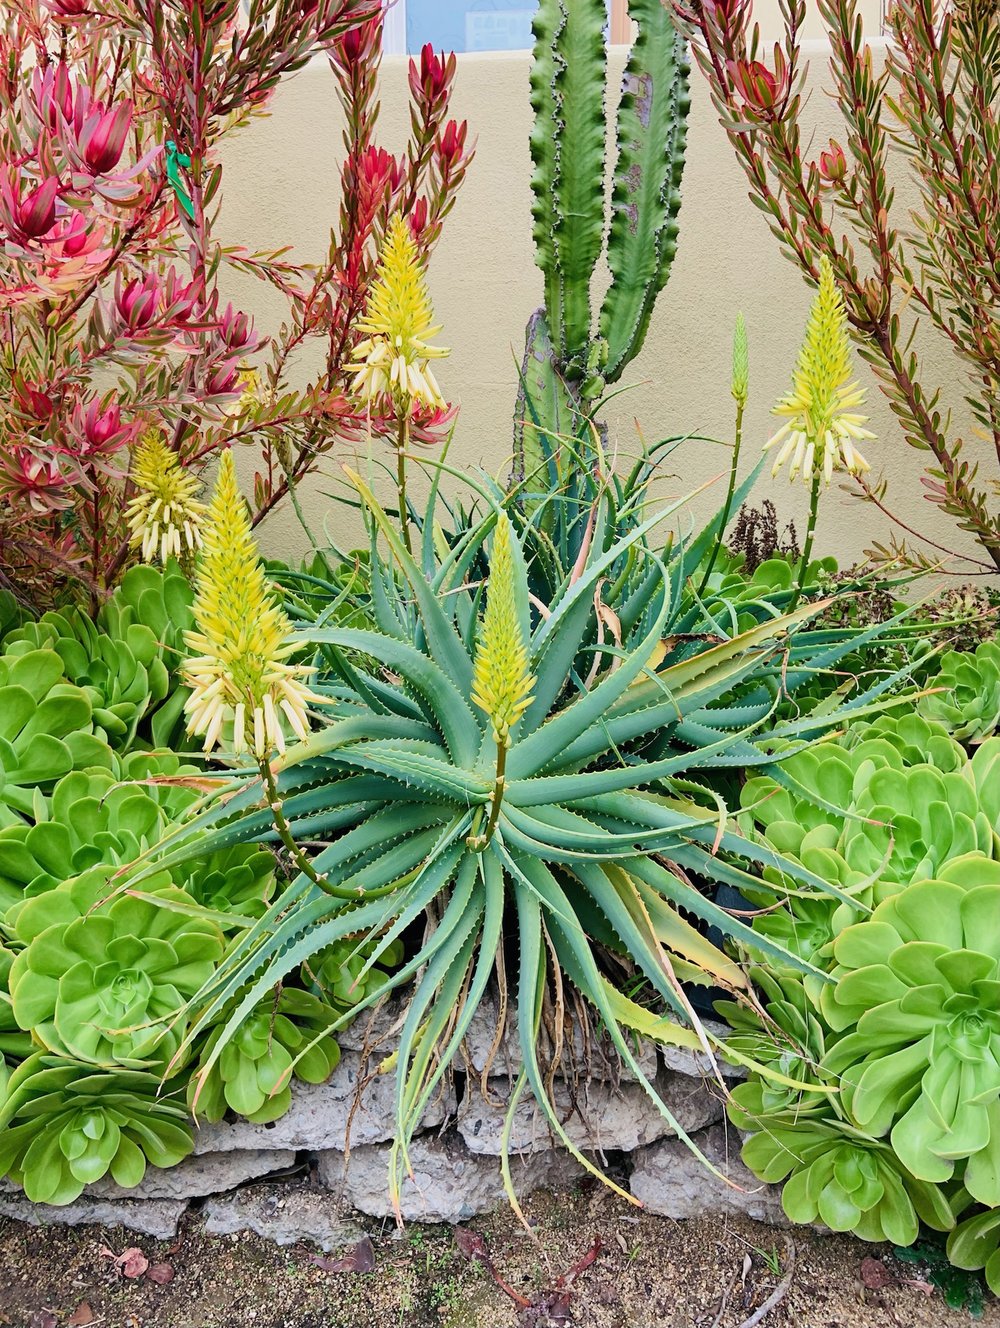 Aloe arborescens "Lutea"